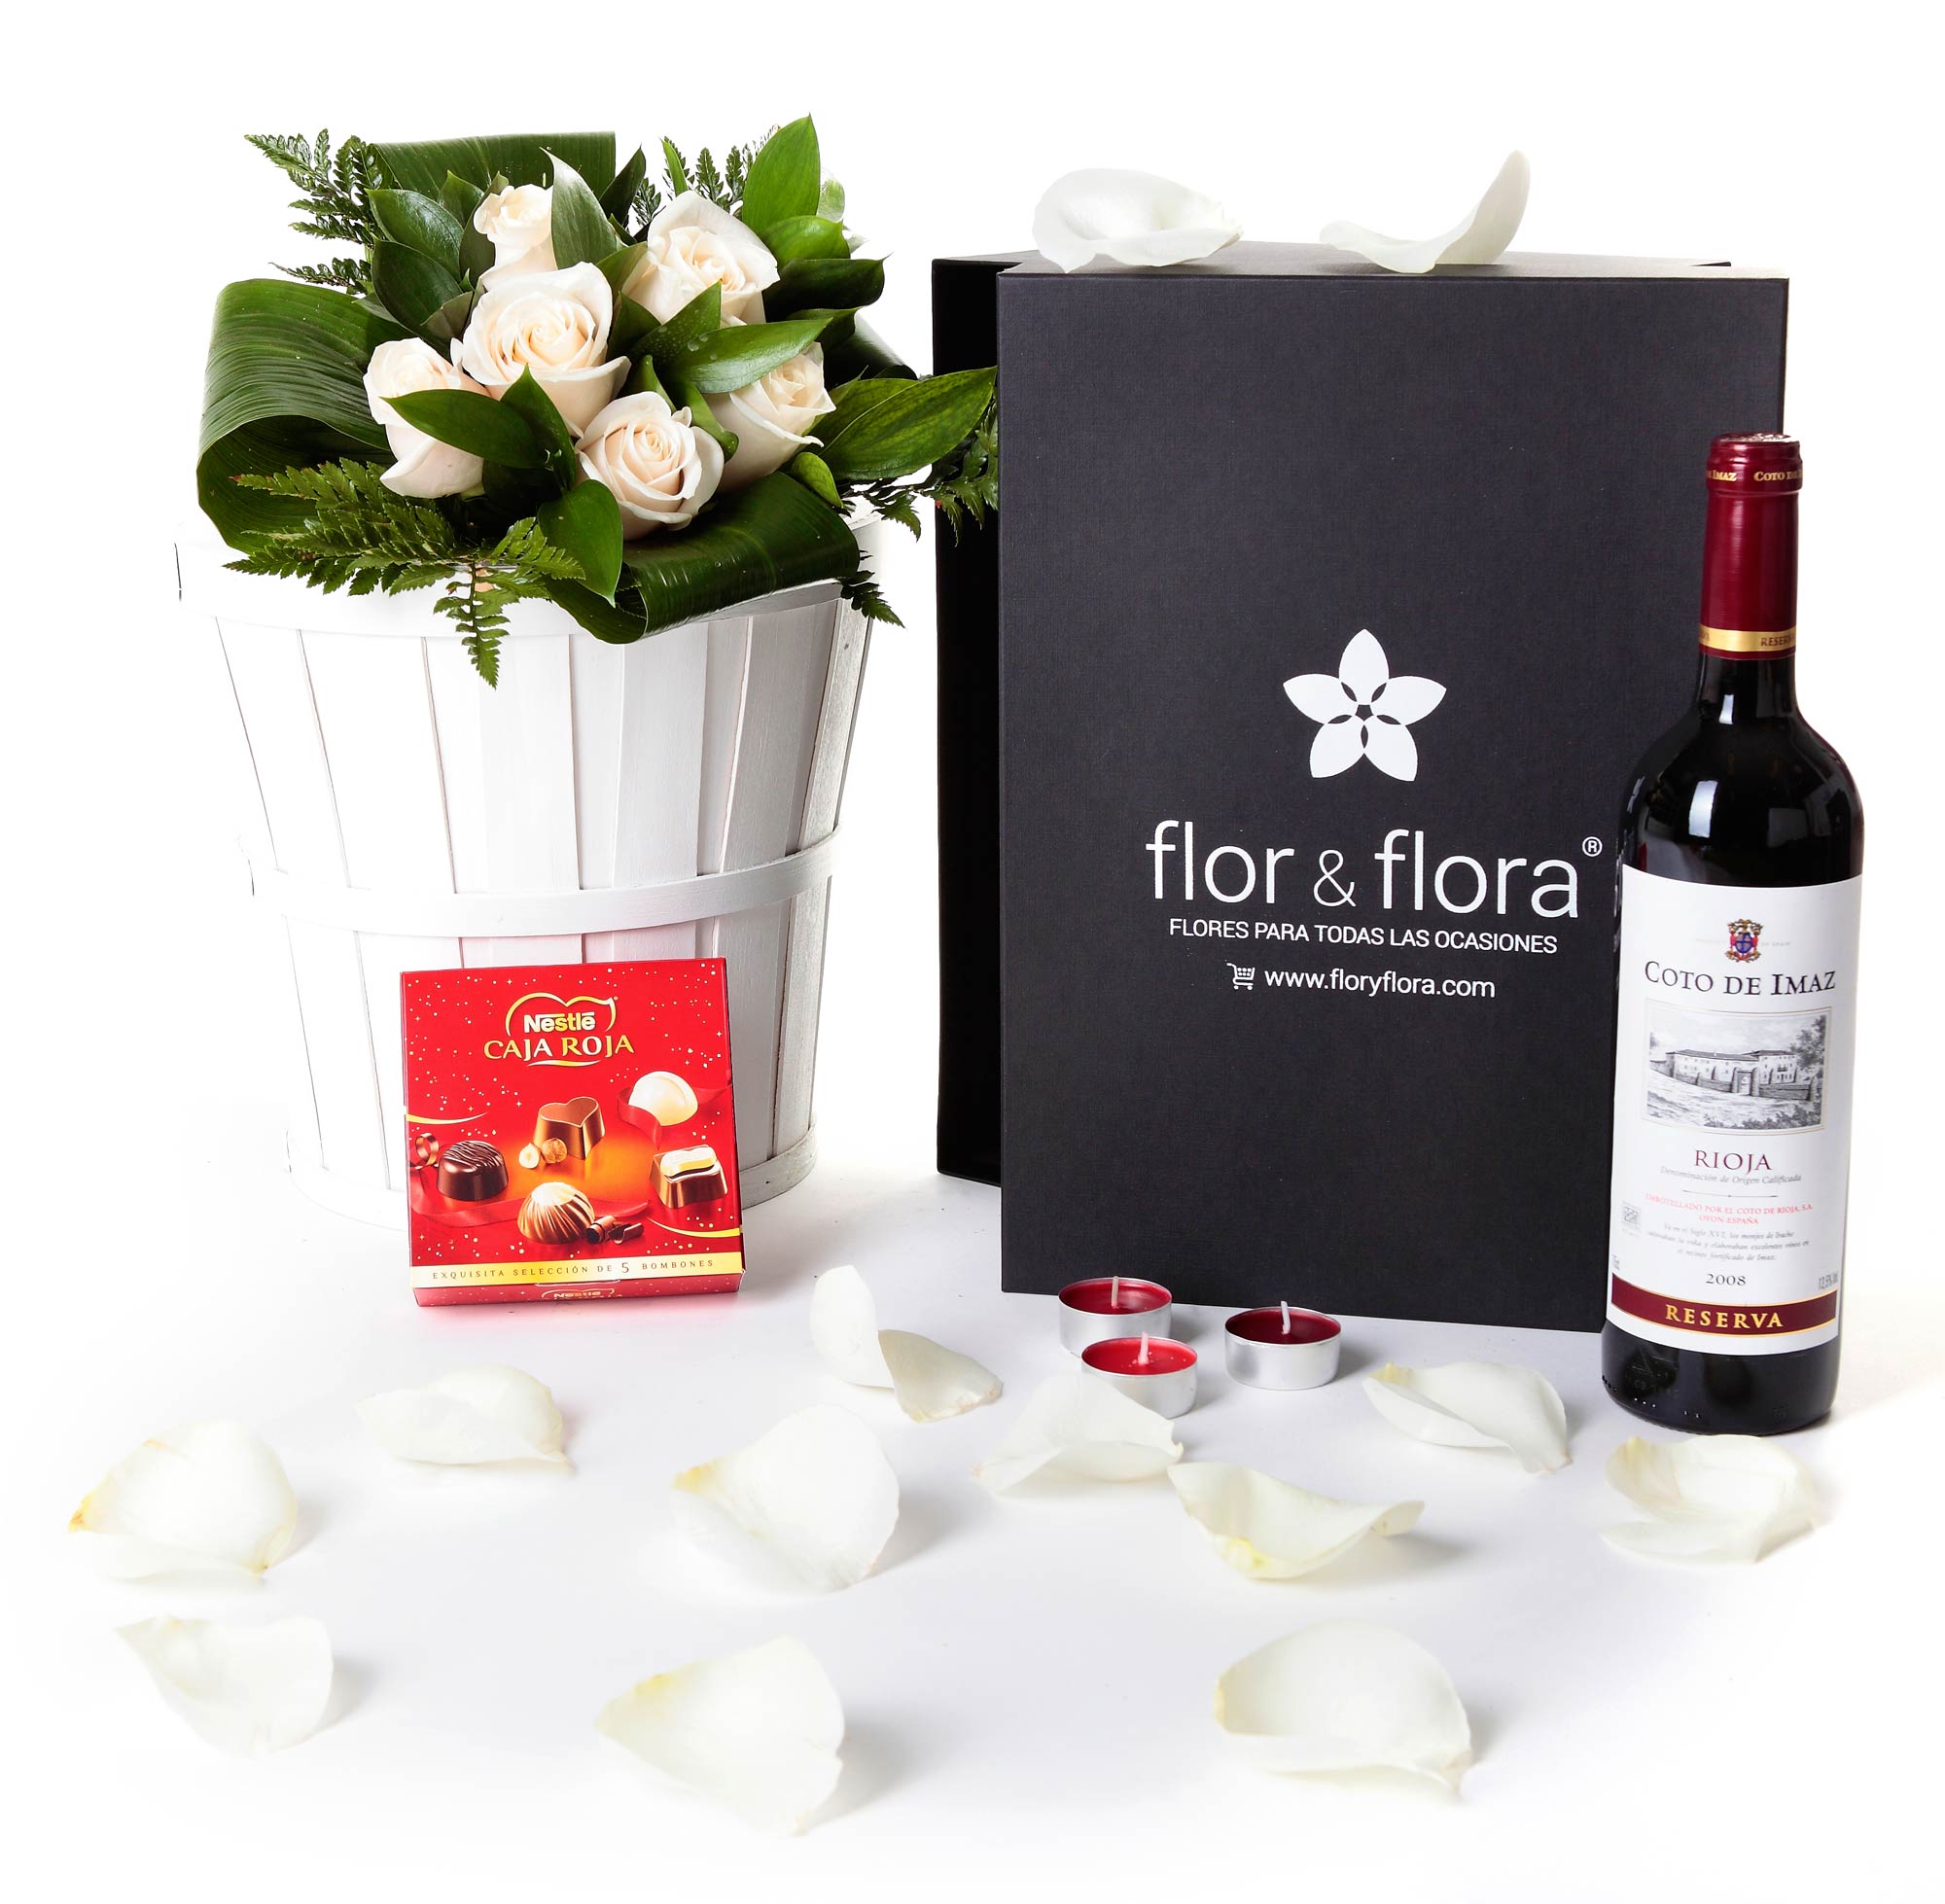 Caja regalo 6 rosas blancas + vino Rioja + regalo - Cajas regalo negras -  Cajas regalo en León. Flor & Flora, flores para todas las ocasiones.